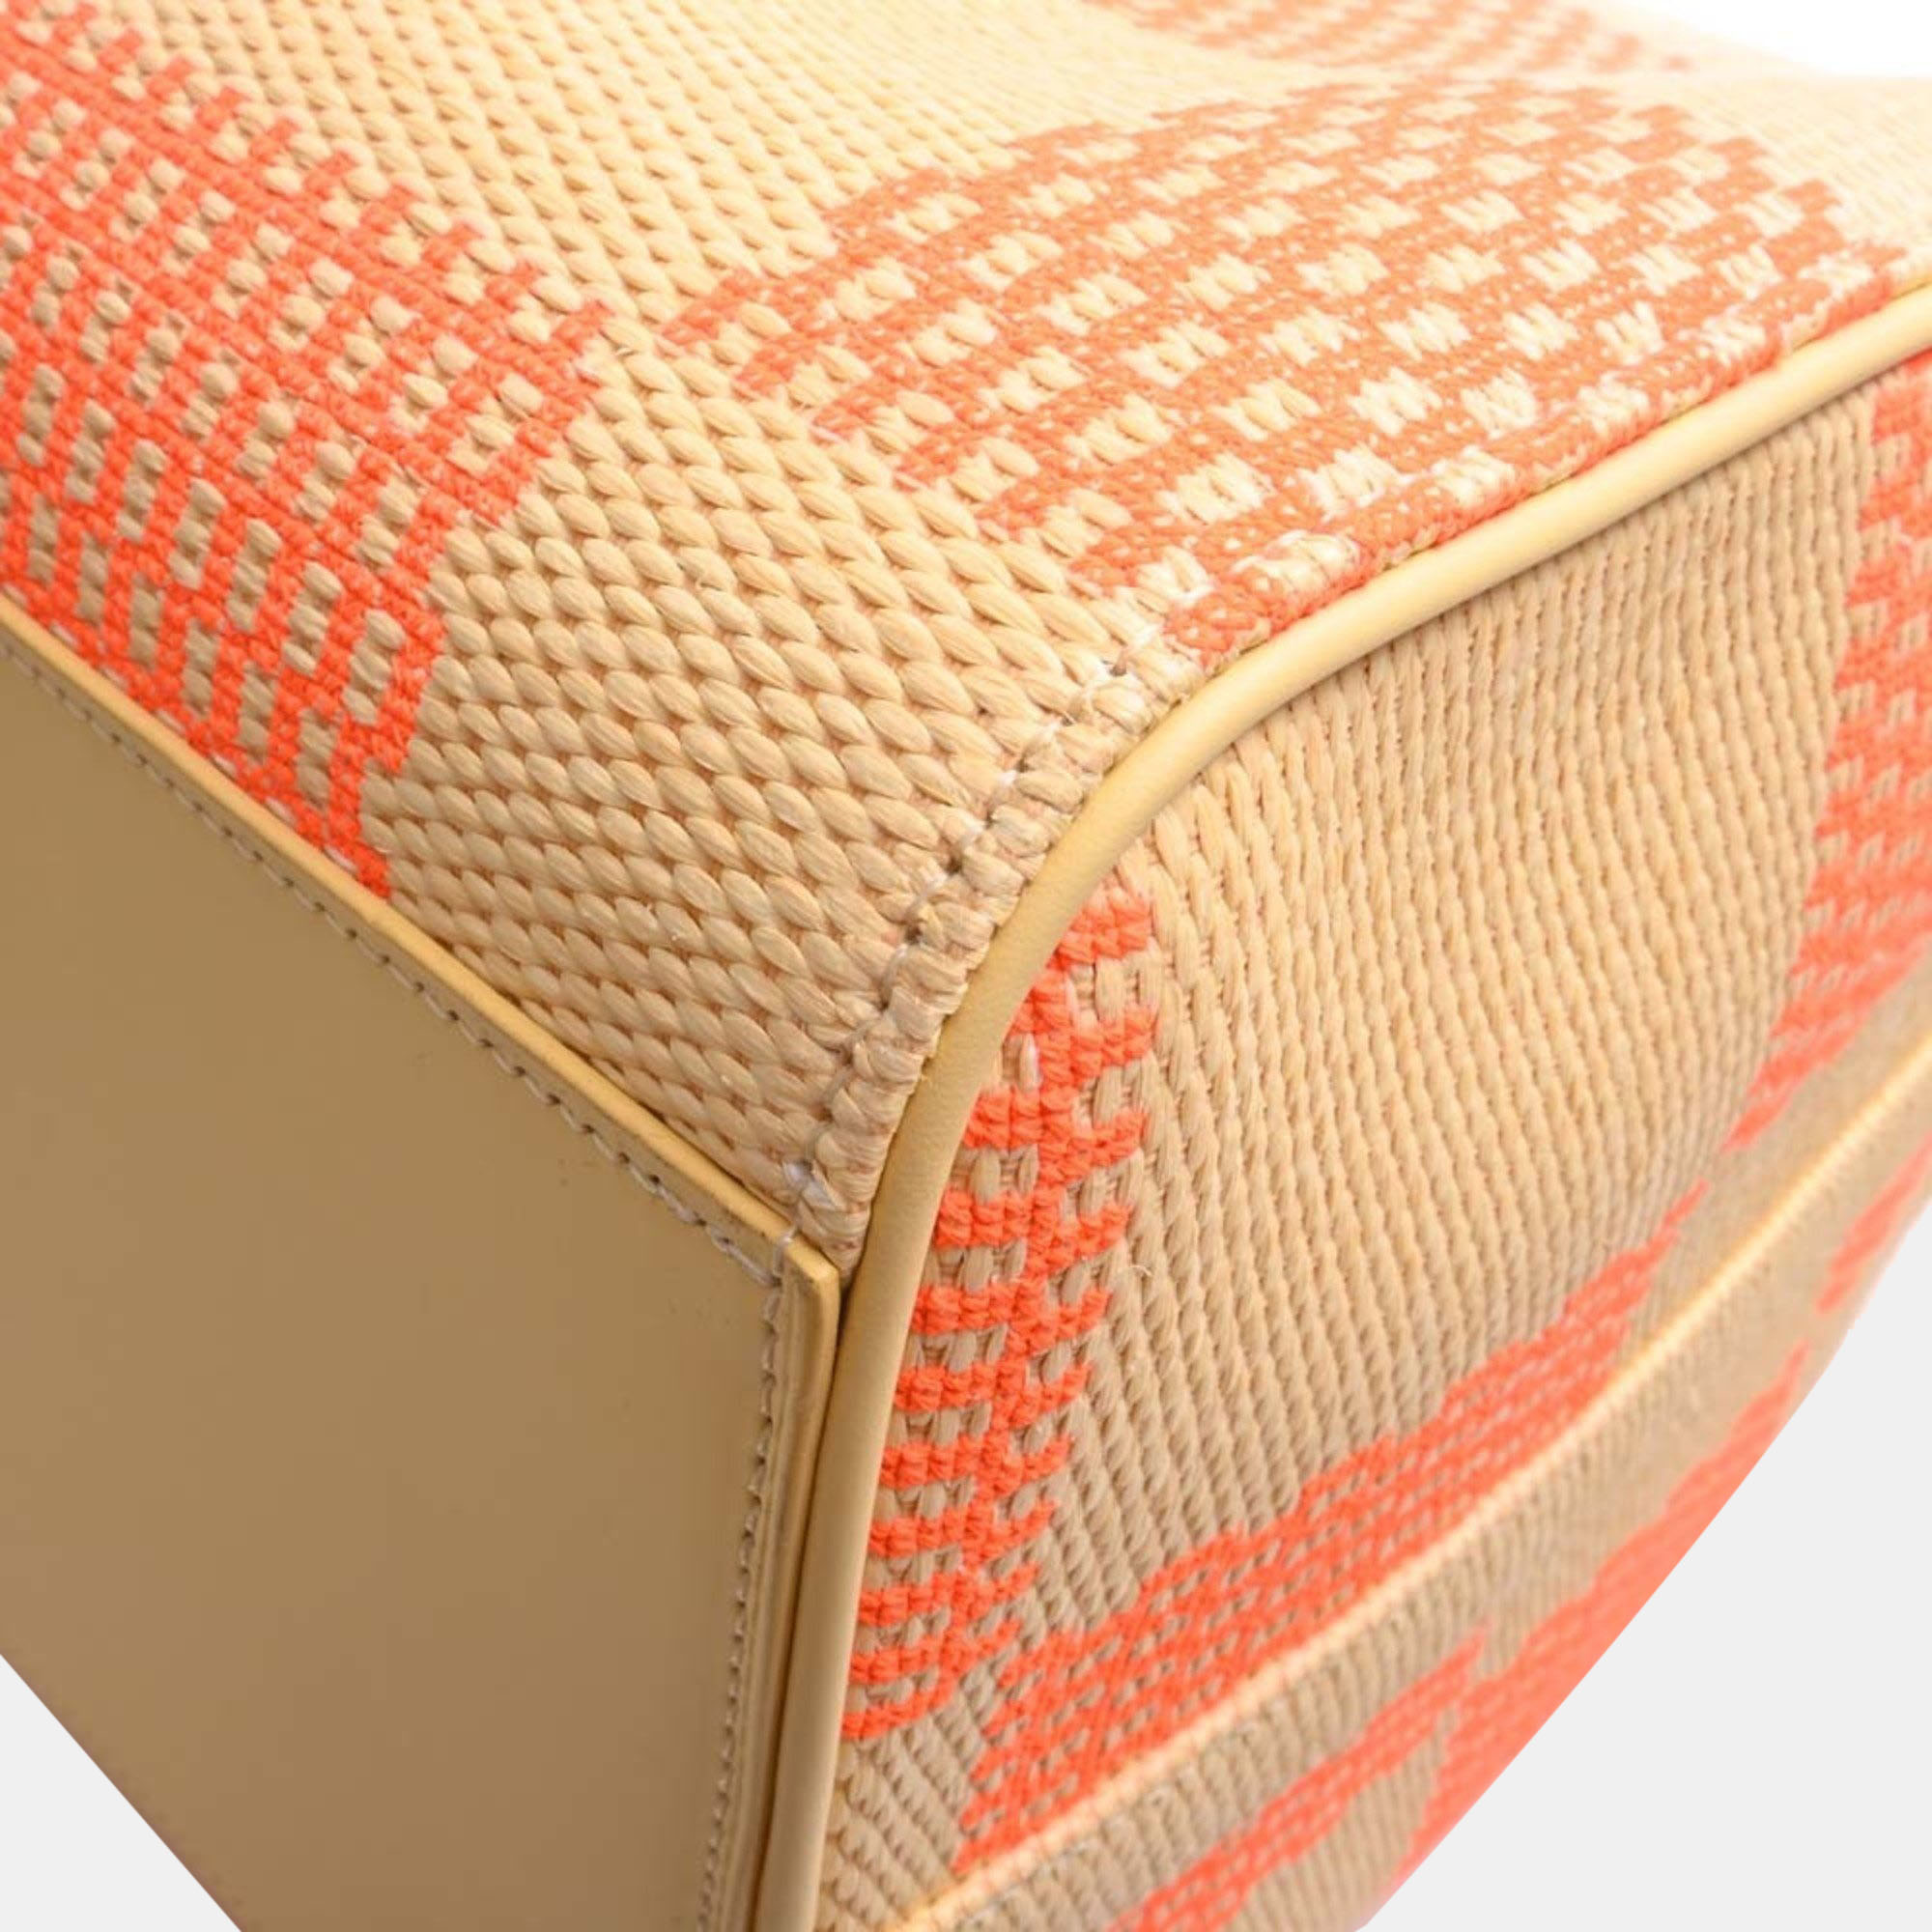 Louis Vuitton Orange Damier Raffia Canvas Keepall Bandoulière 55 Duffel Bag